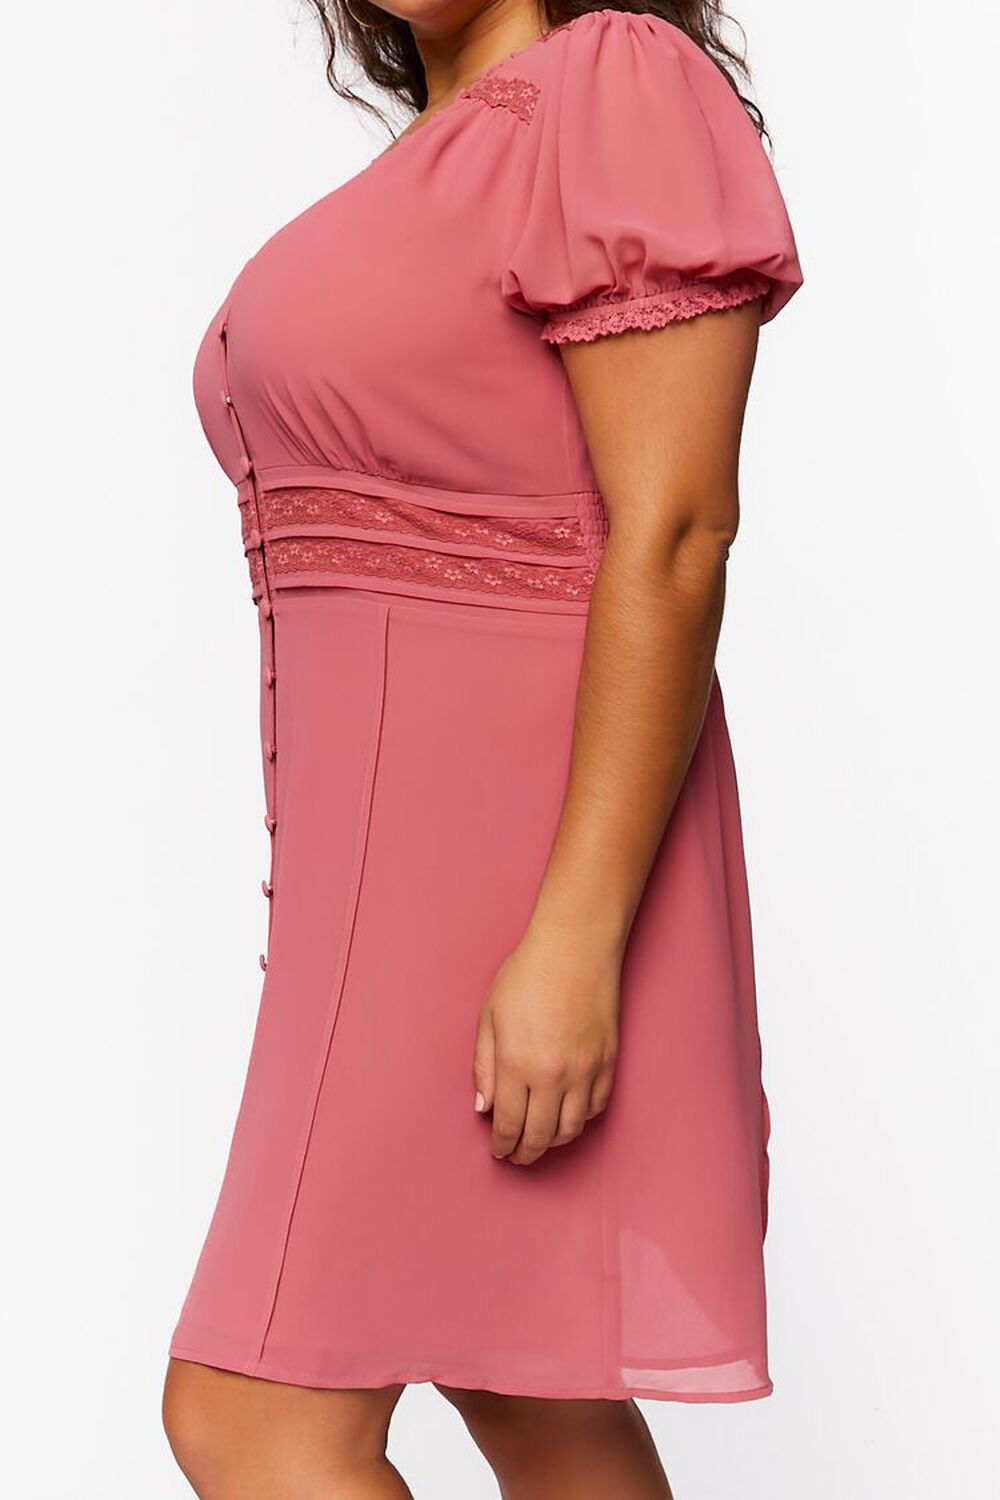 DUSTY PINK Plus Size Chiffon Puff-Sleeve Mini Dress, image 2